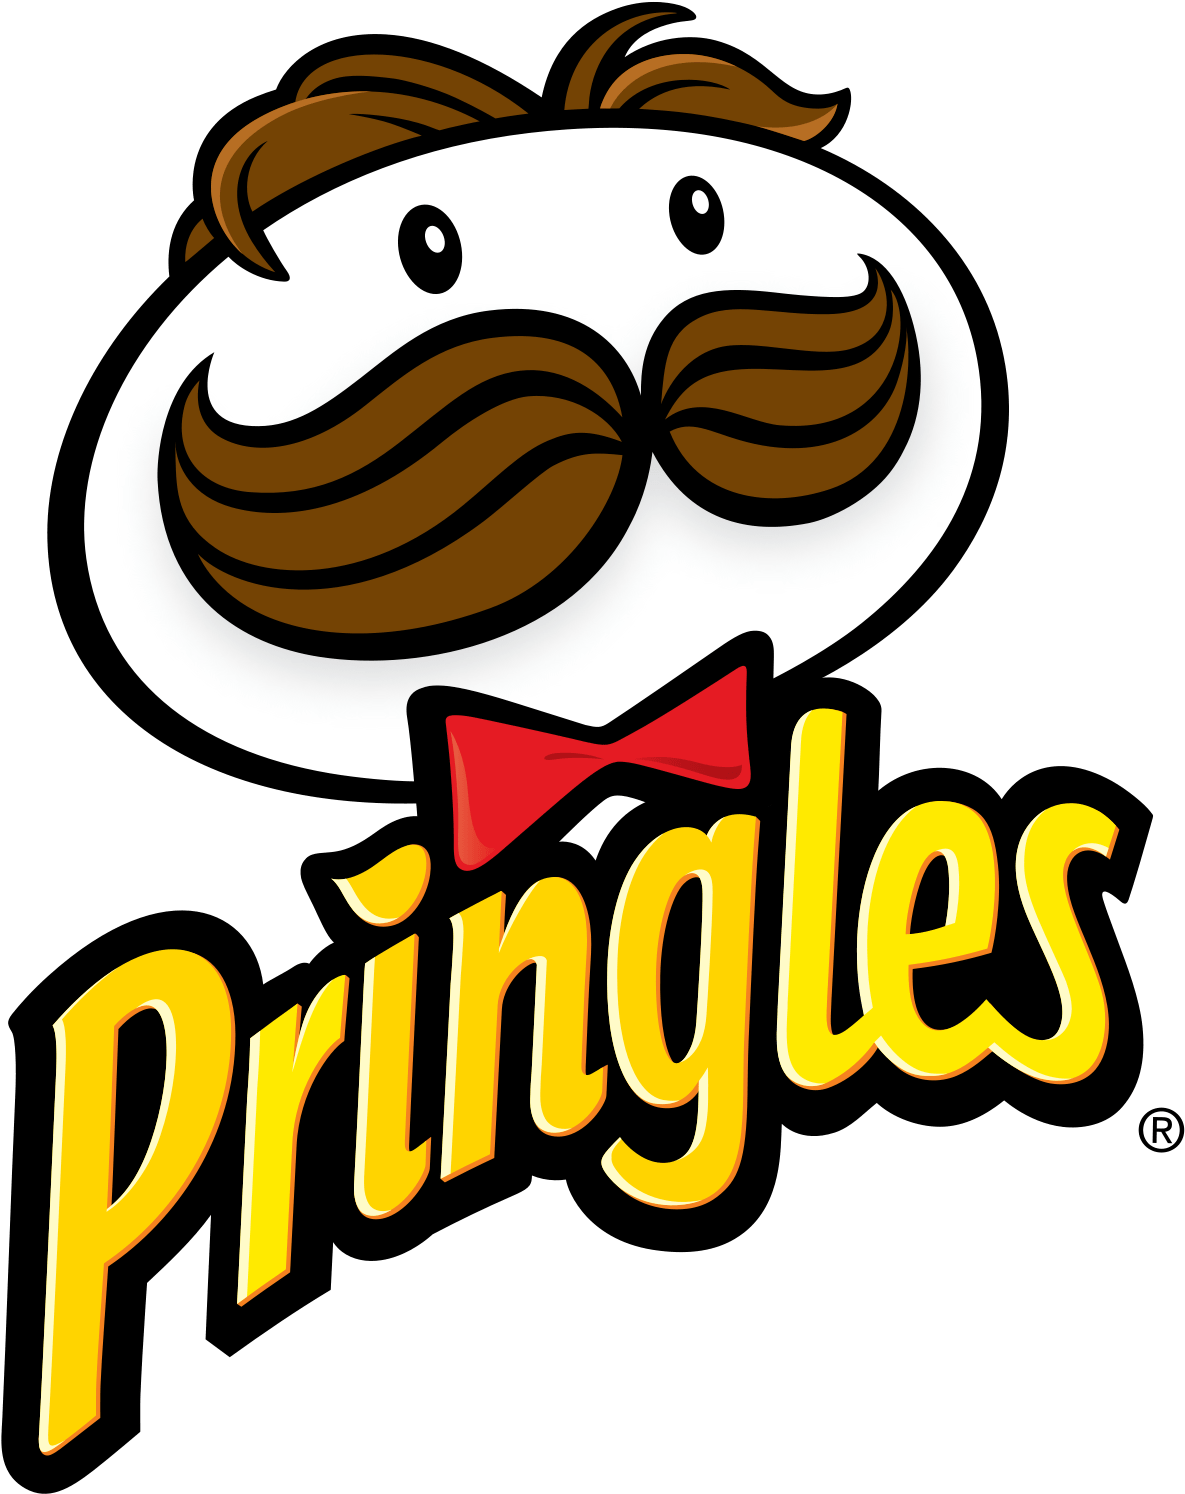 Food - Pringles - Pringles Logo Png (1200x1509)